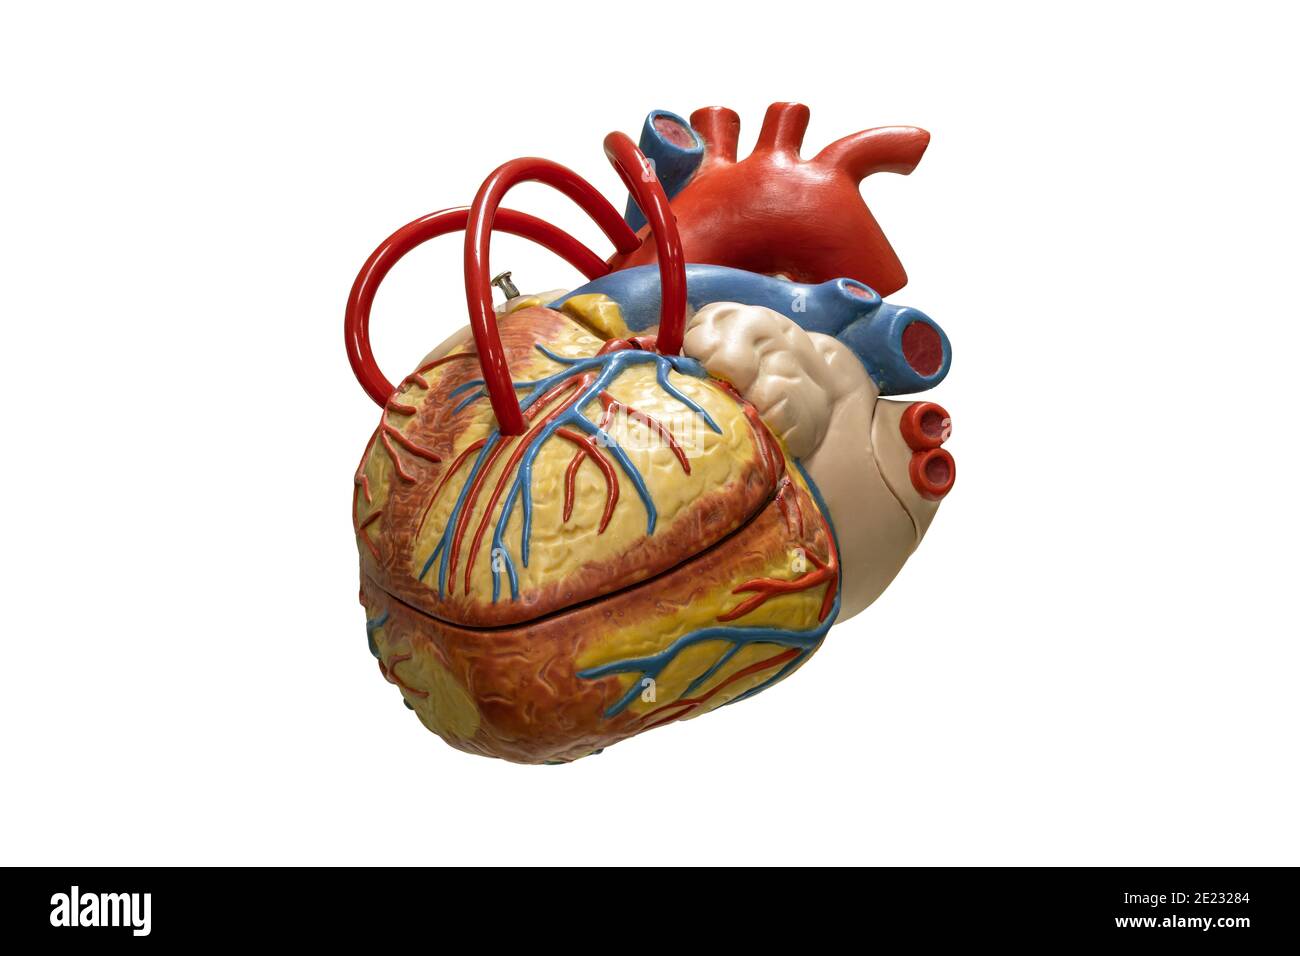 Anatomia umana cuore modello in plastica isolato su sfondo bianco. Foto Stock